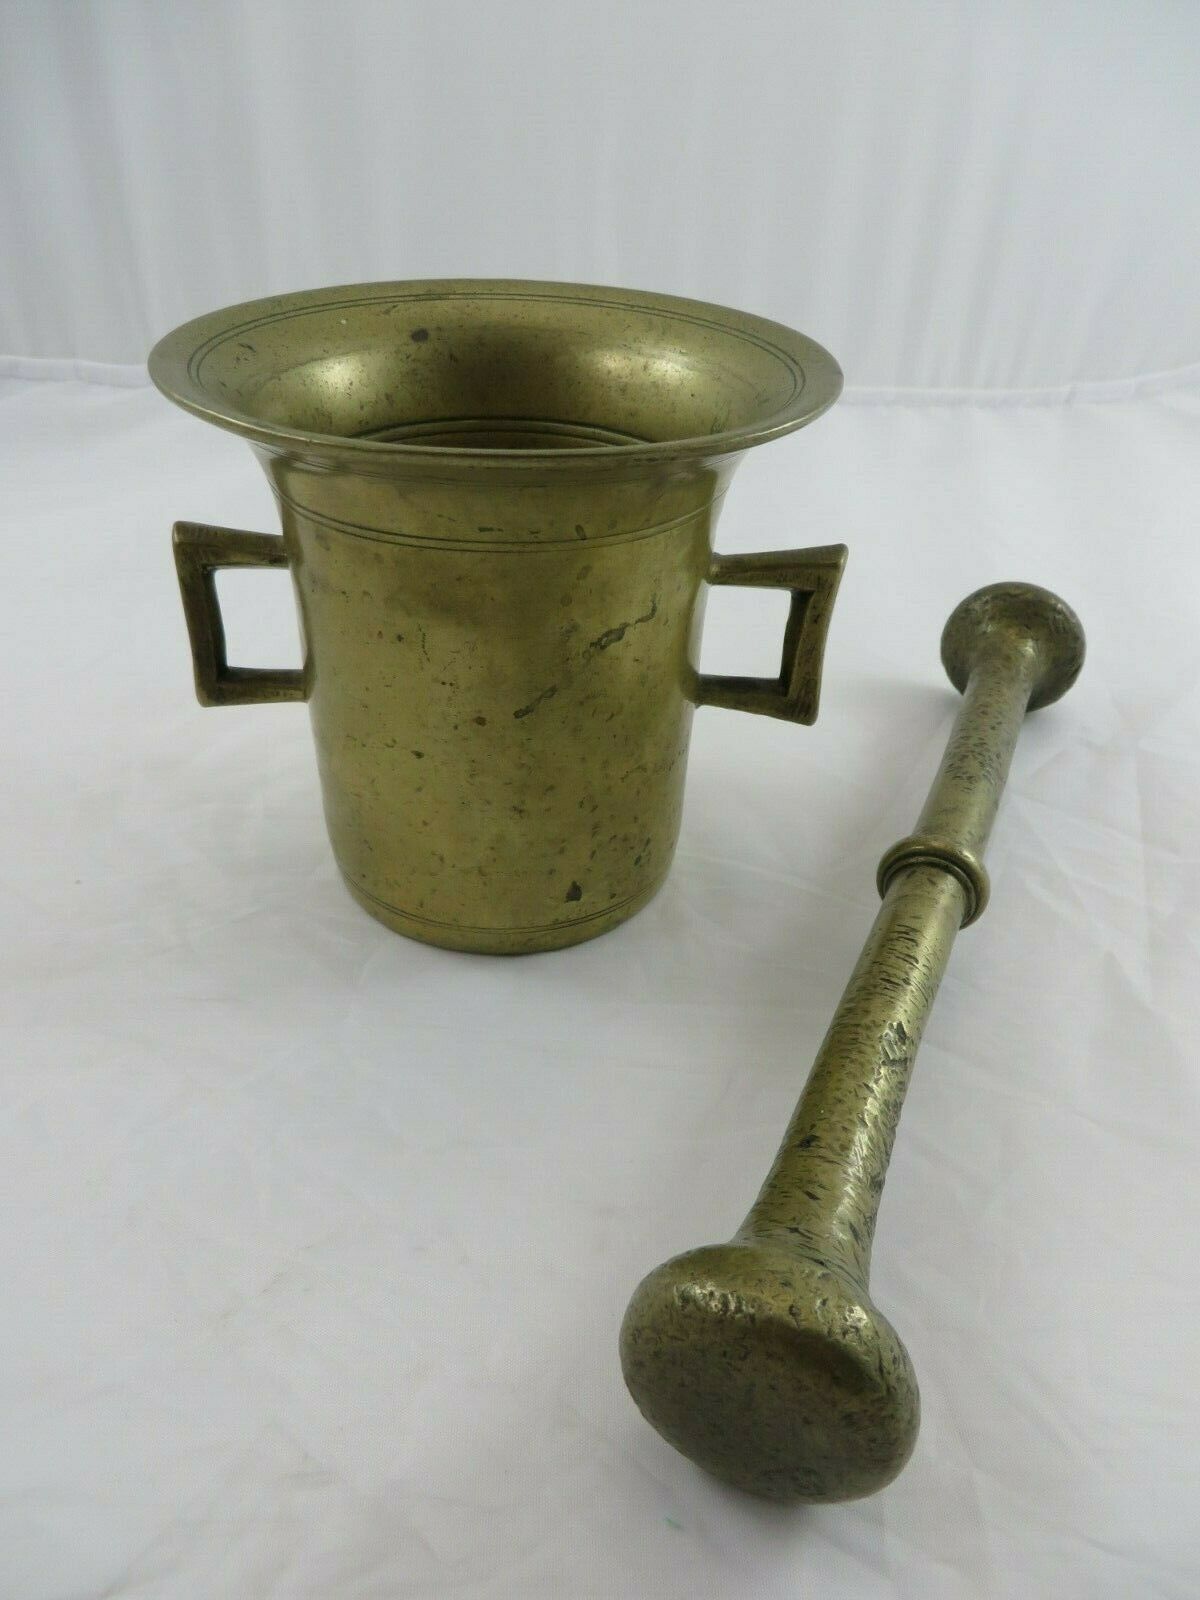 Vintage Brass Mortar And Pestle Herb Spice Grinder Lg 4 5/8" Diameter